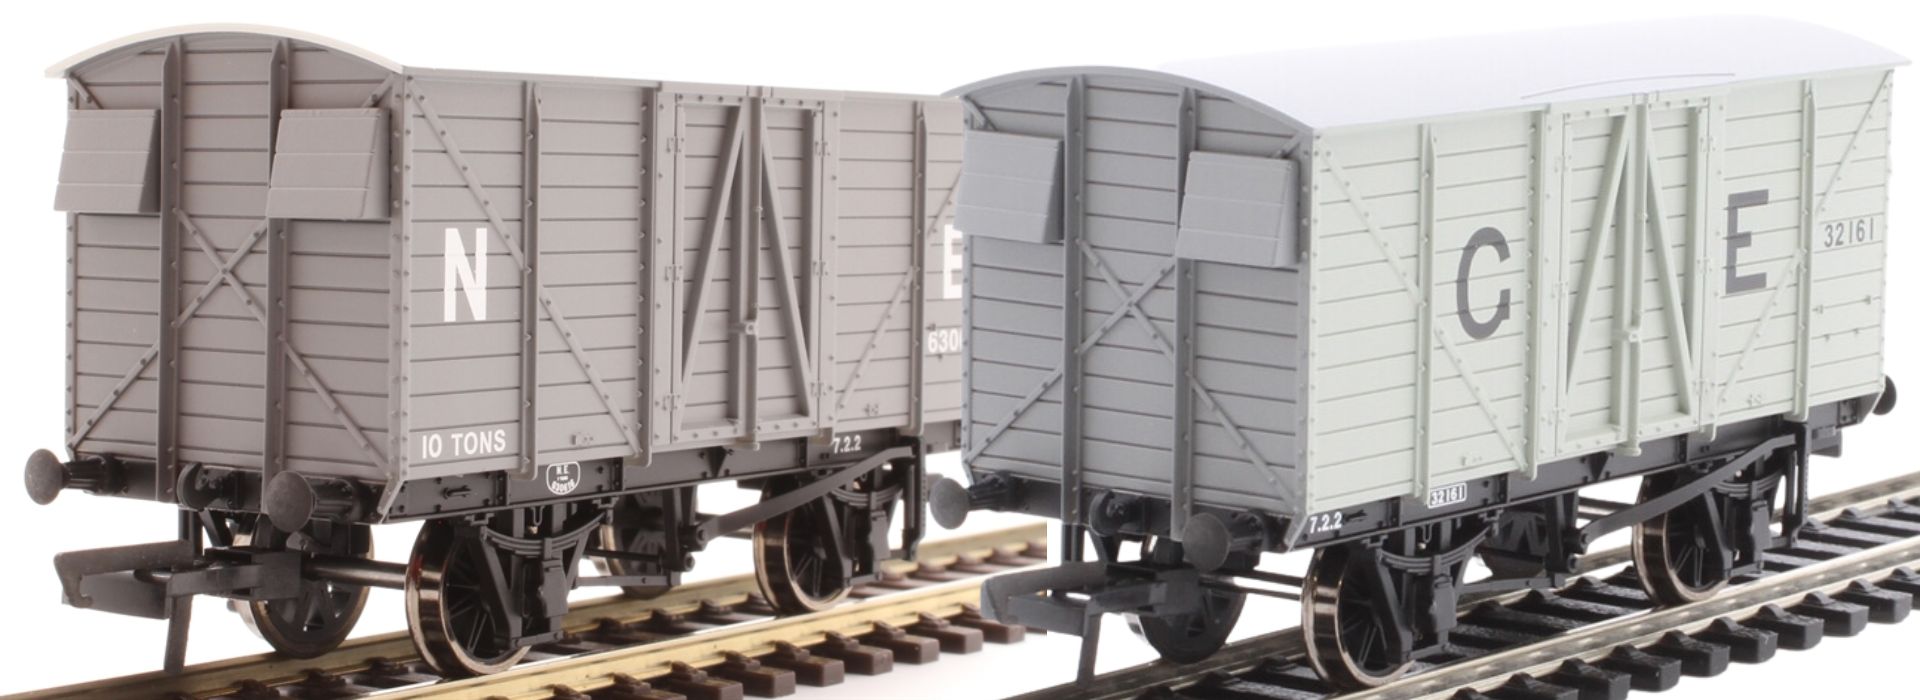 Oxford Rail OO Gauge (1:76 Scale) GER 10 ton van